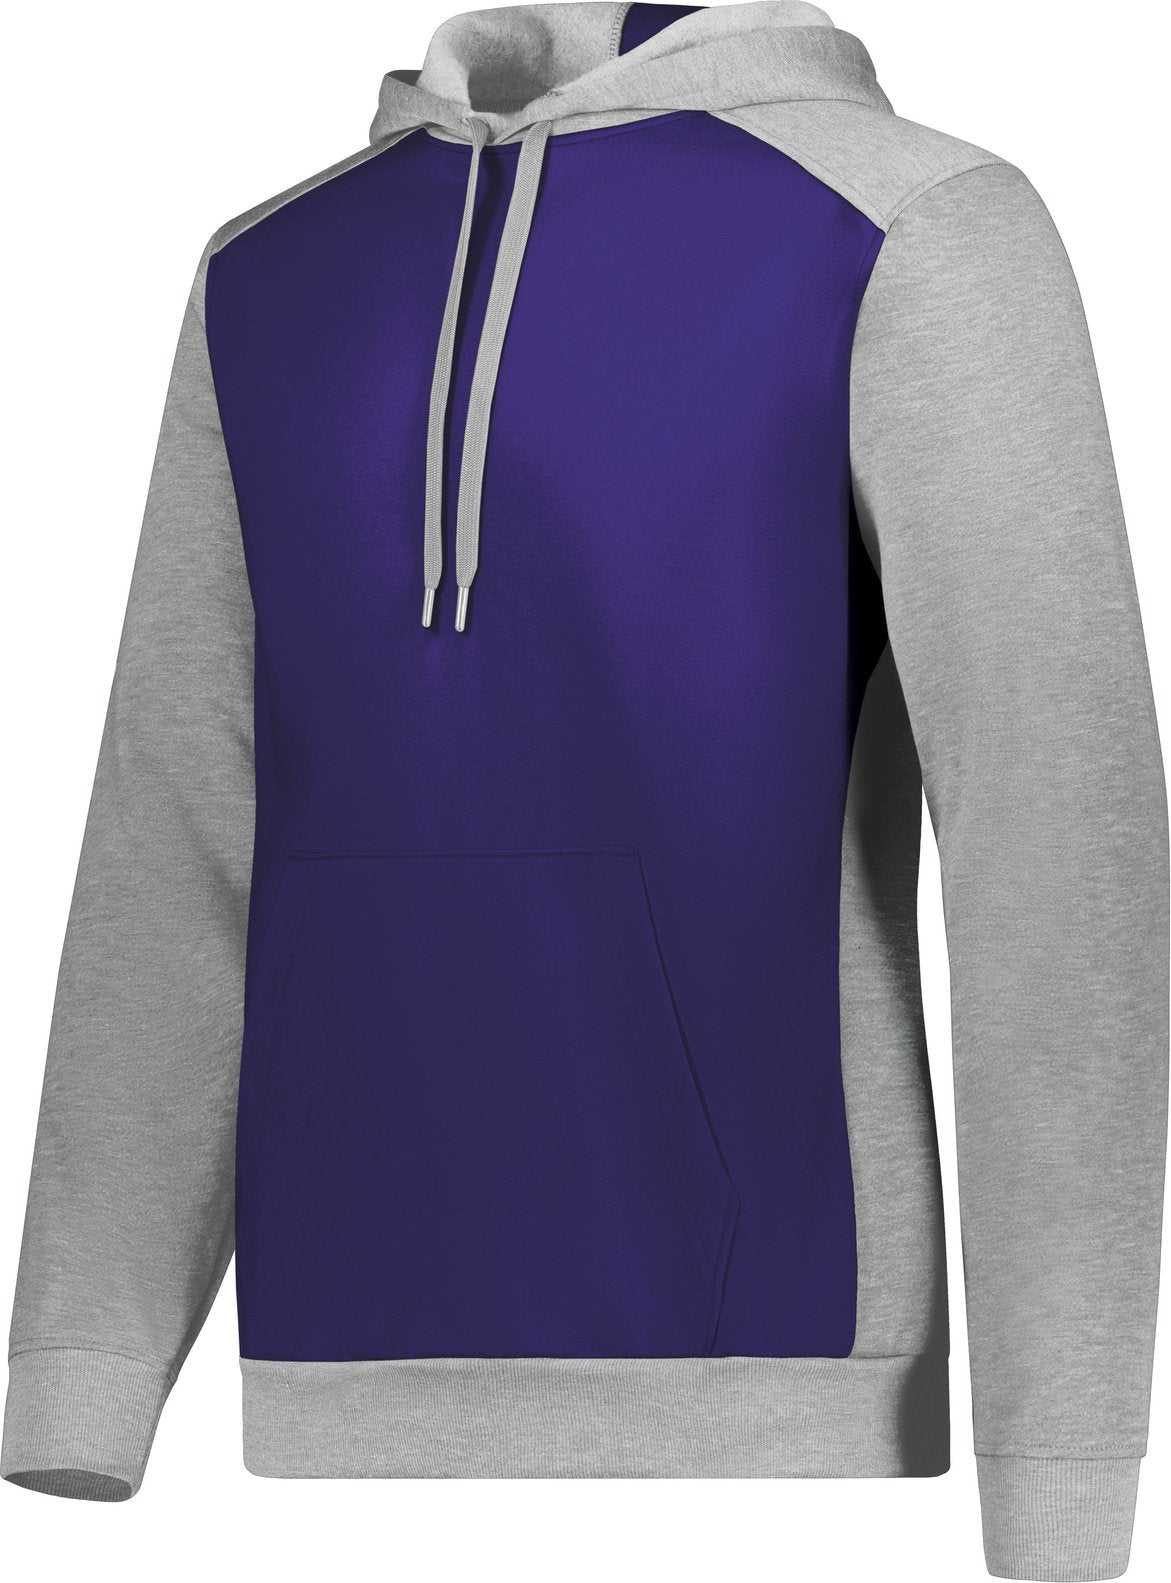 Augusta 6865 Three-Season Fleece Pullover Hoodie - Purple Gray Heather - HIT a Double